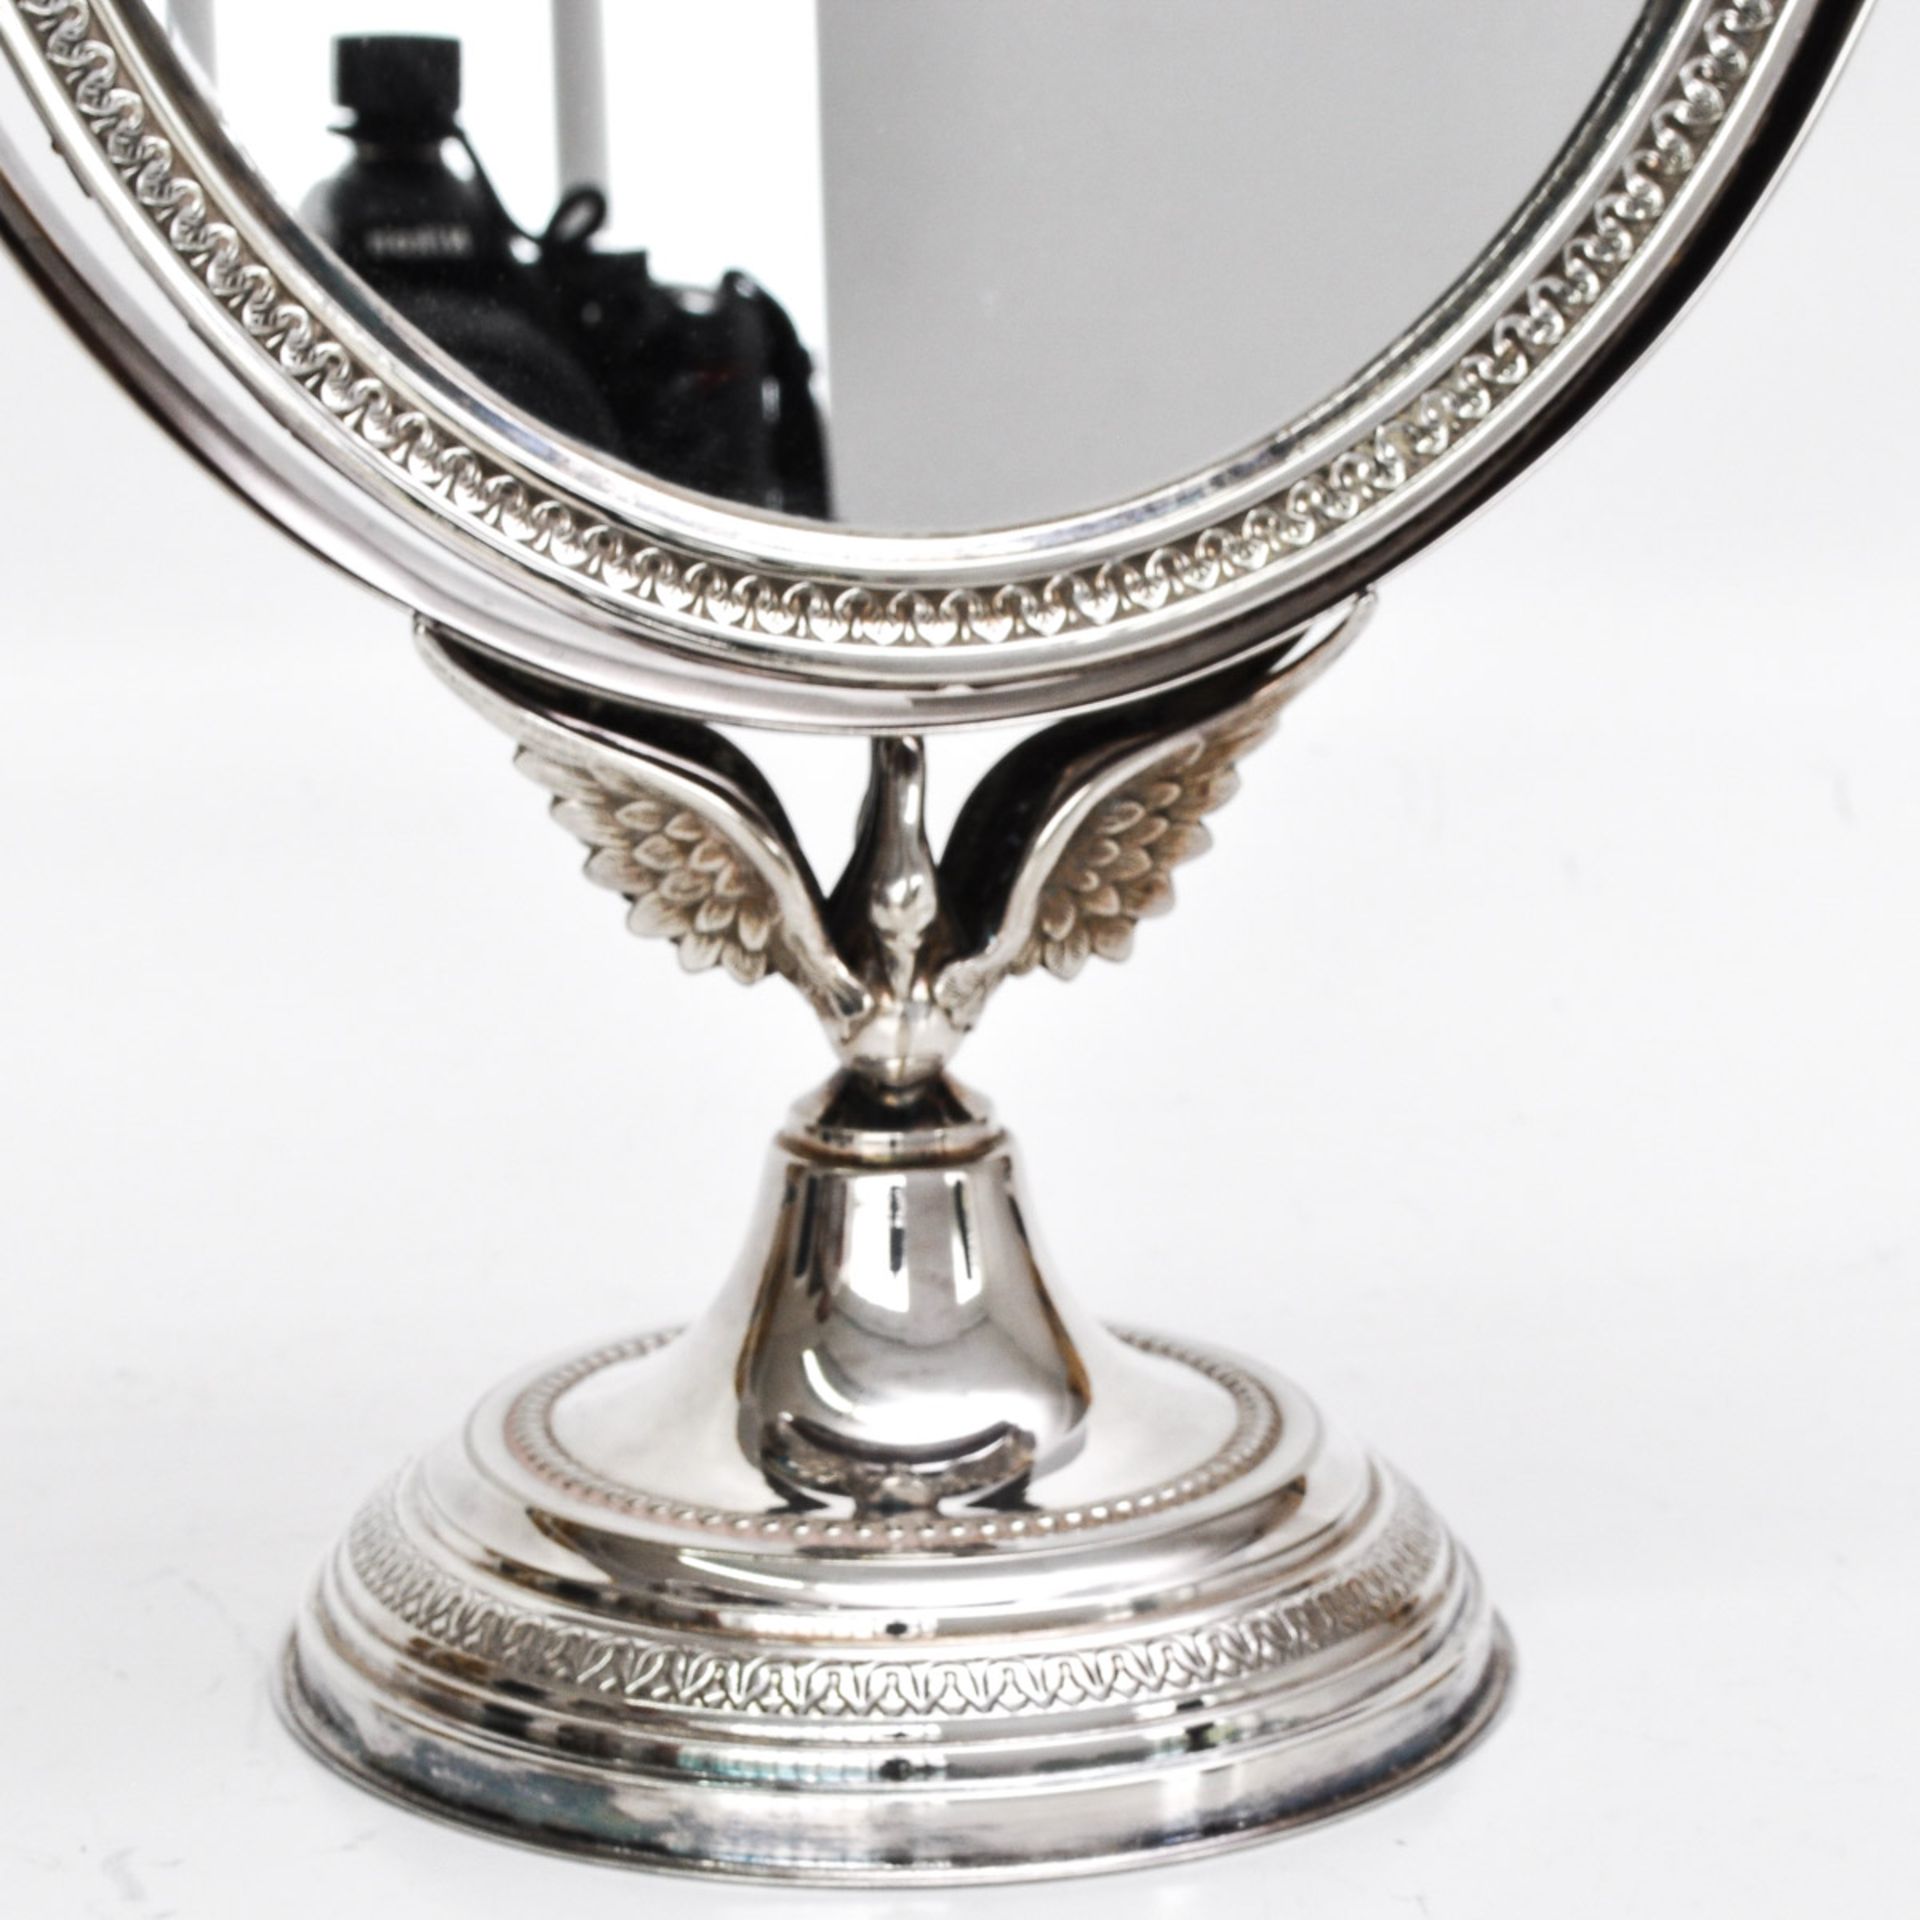 A Silver Plate Vanity Mirror - Bild 3 aus 4